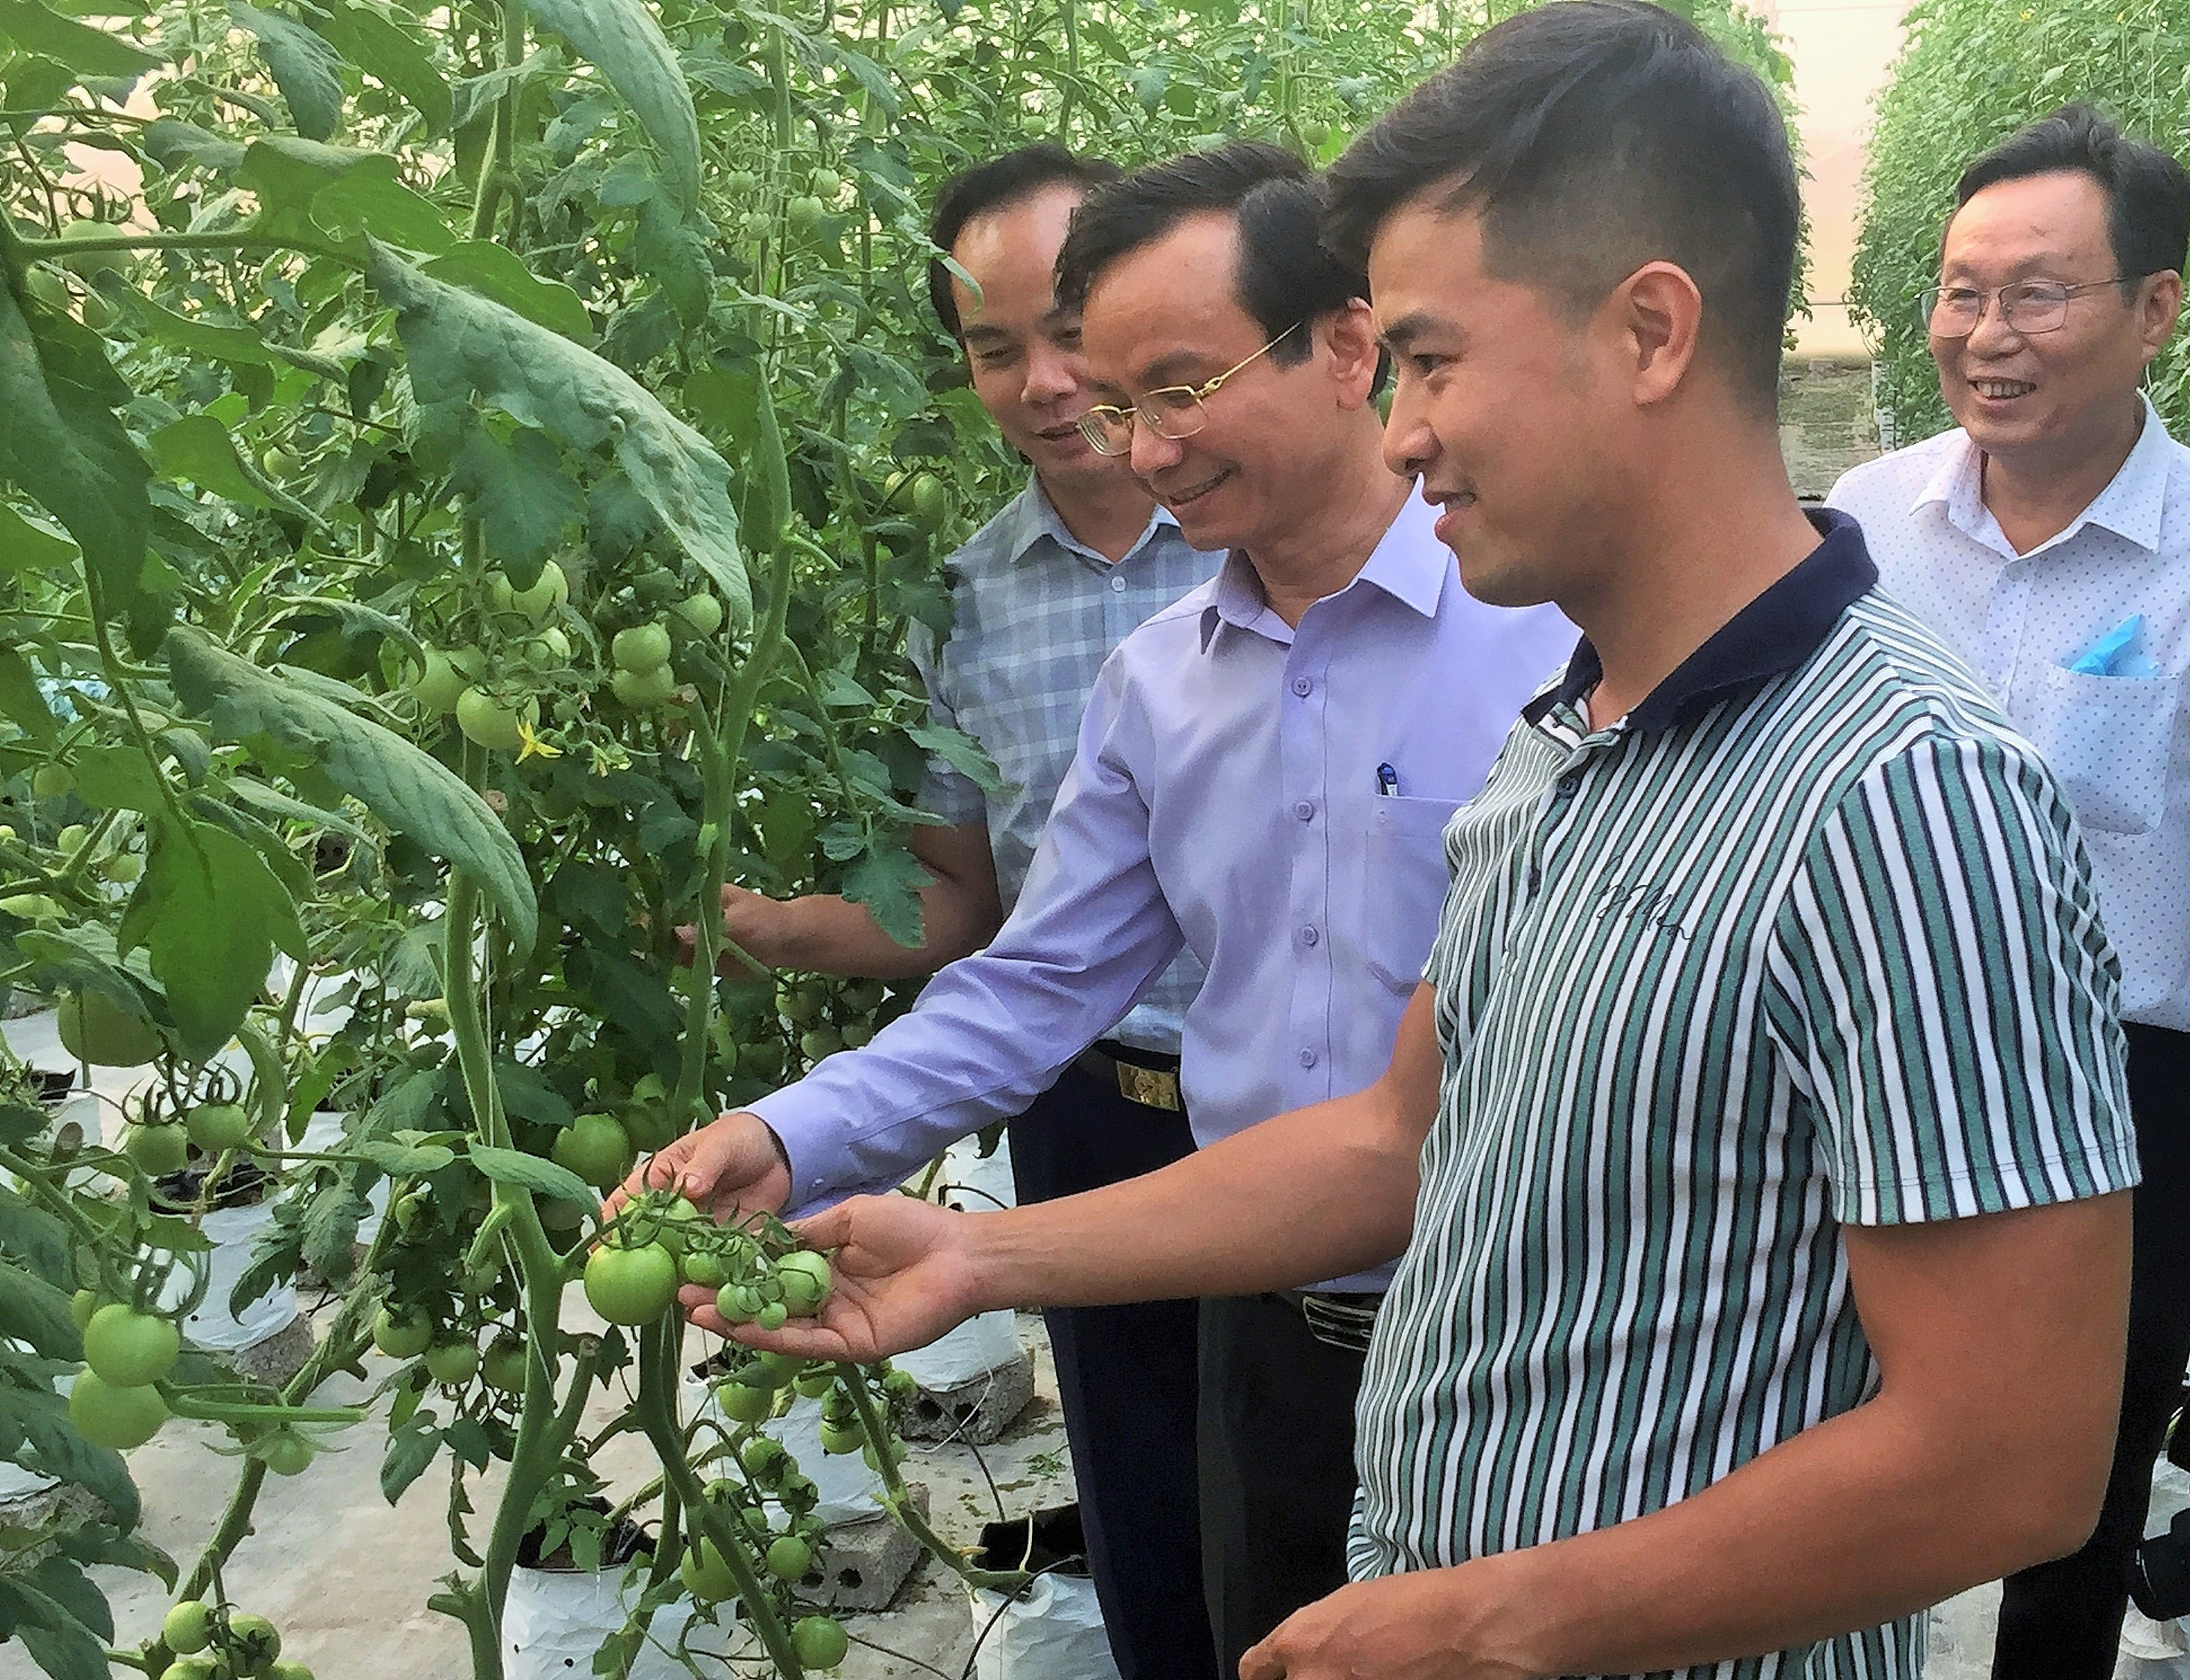 bna_ Ảnh trang 1, các đồng chí lãnh đạo huyện Quỳnh Lưu thăm mô hình sản xuất nông ứng dụng công nghệ cao tại xã Quỳnh Giang. Ảnh Hoàng Vĩnh.JPG